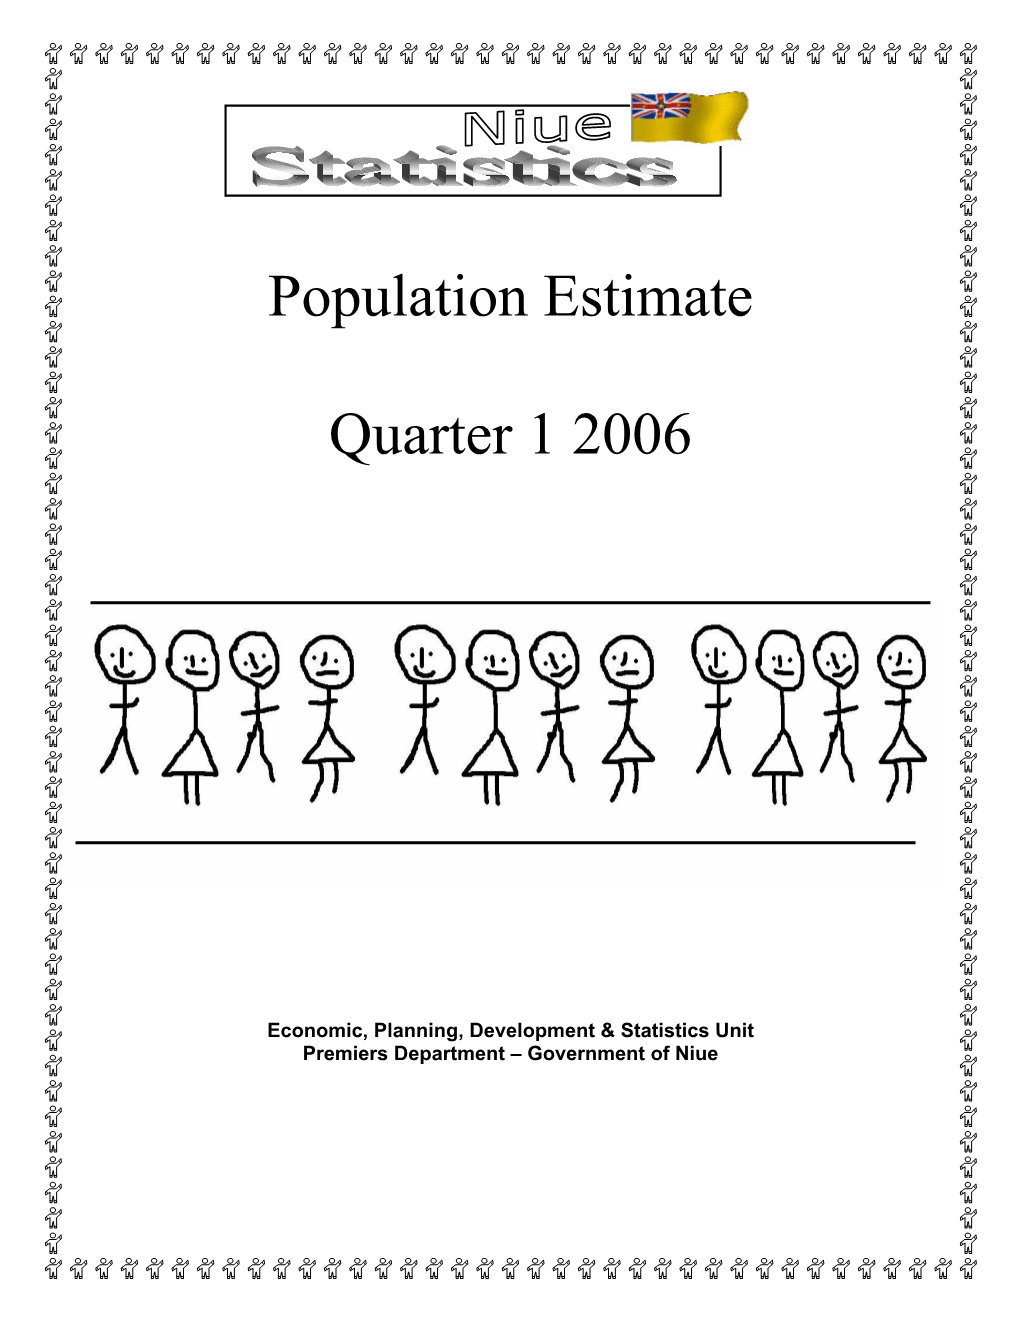 Population Estimate Quarter 1 2006